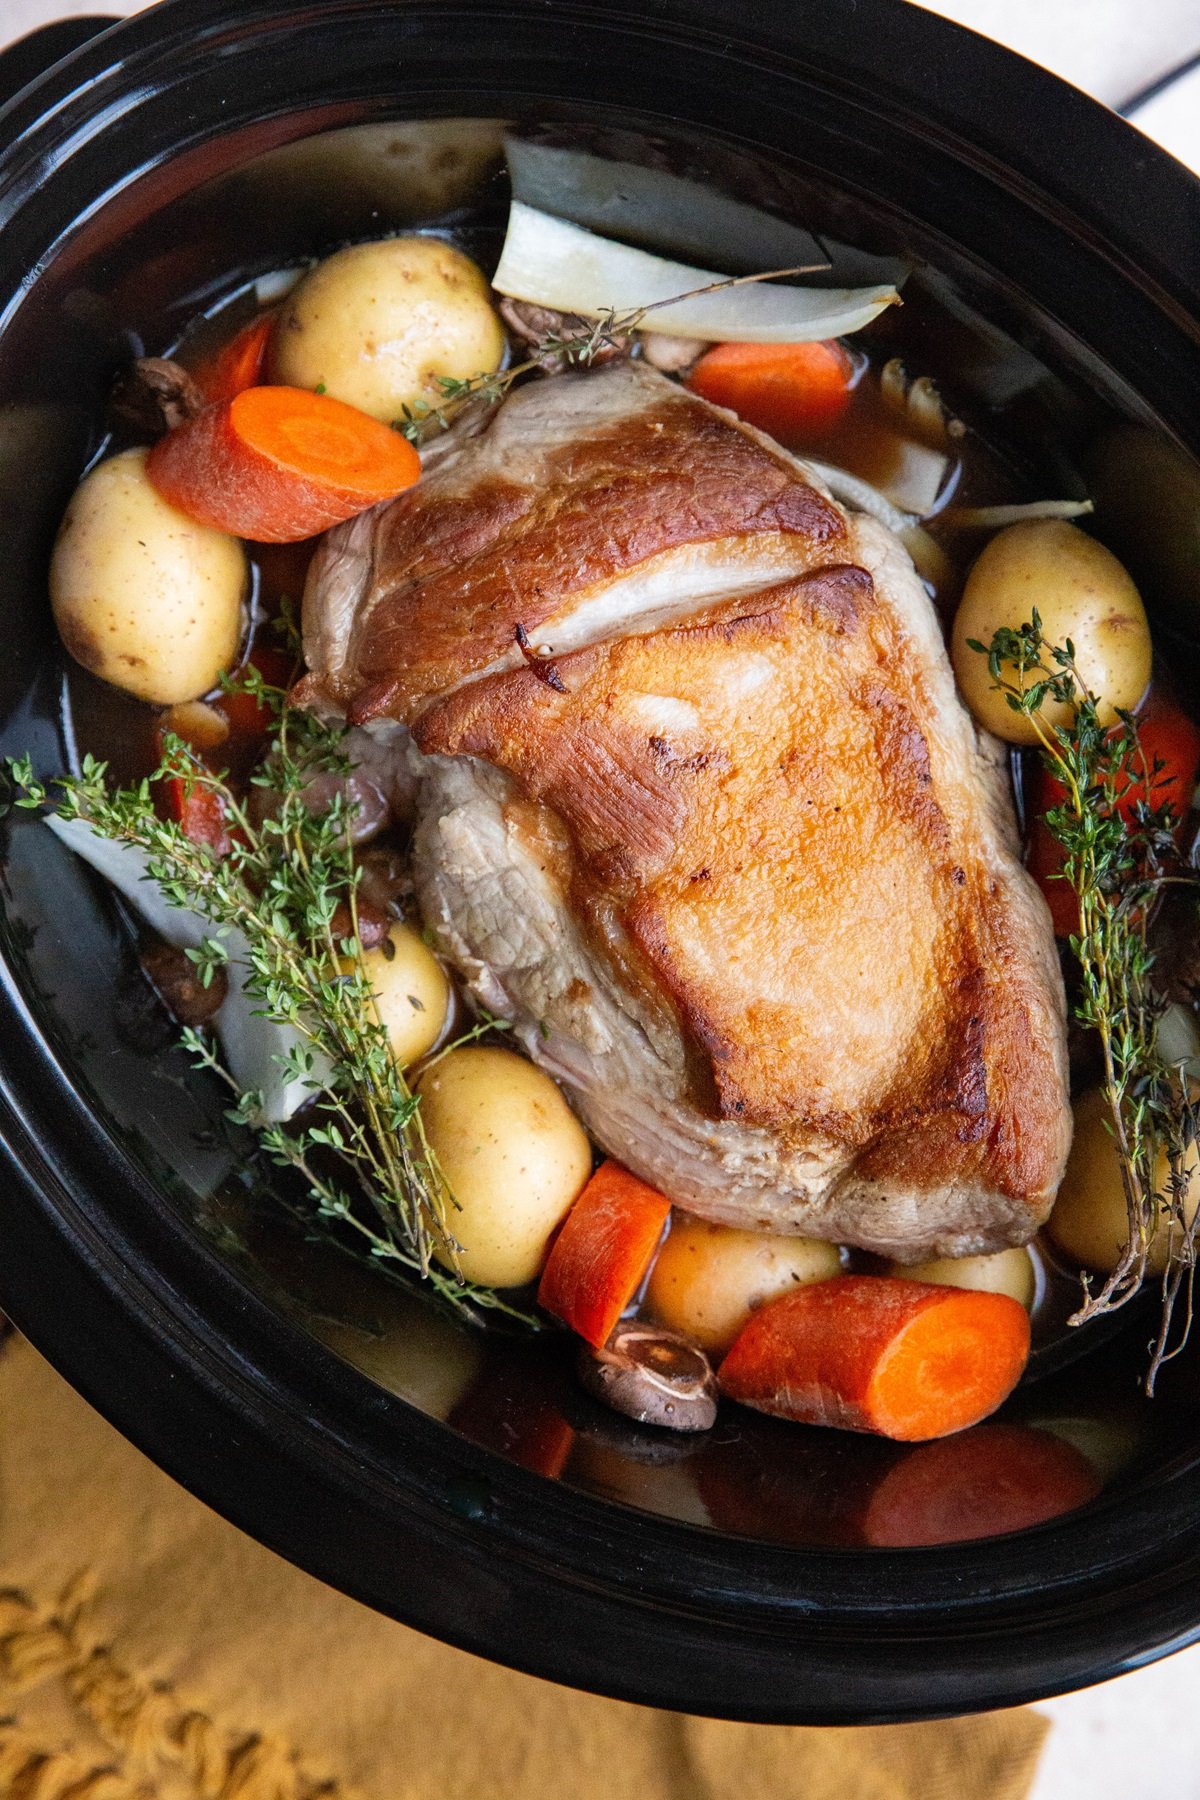 Pork roast and vegetables in a crock pot.